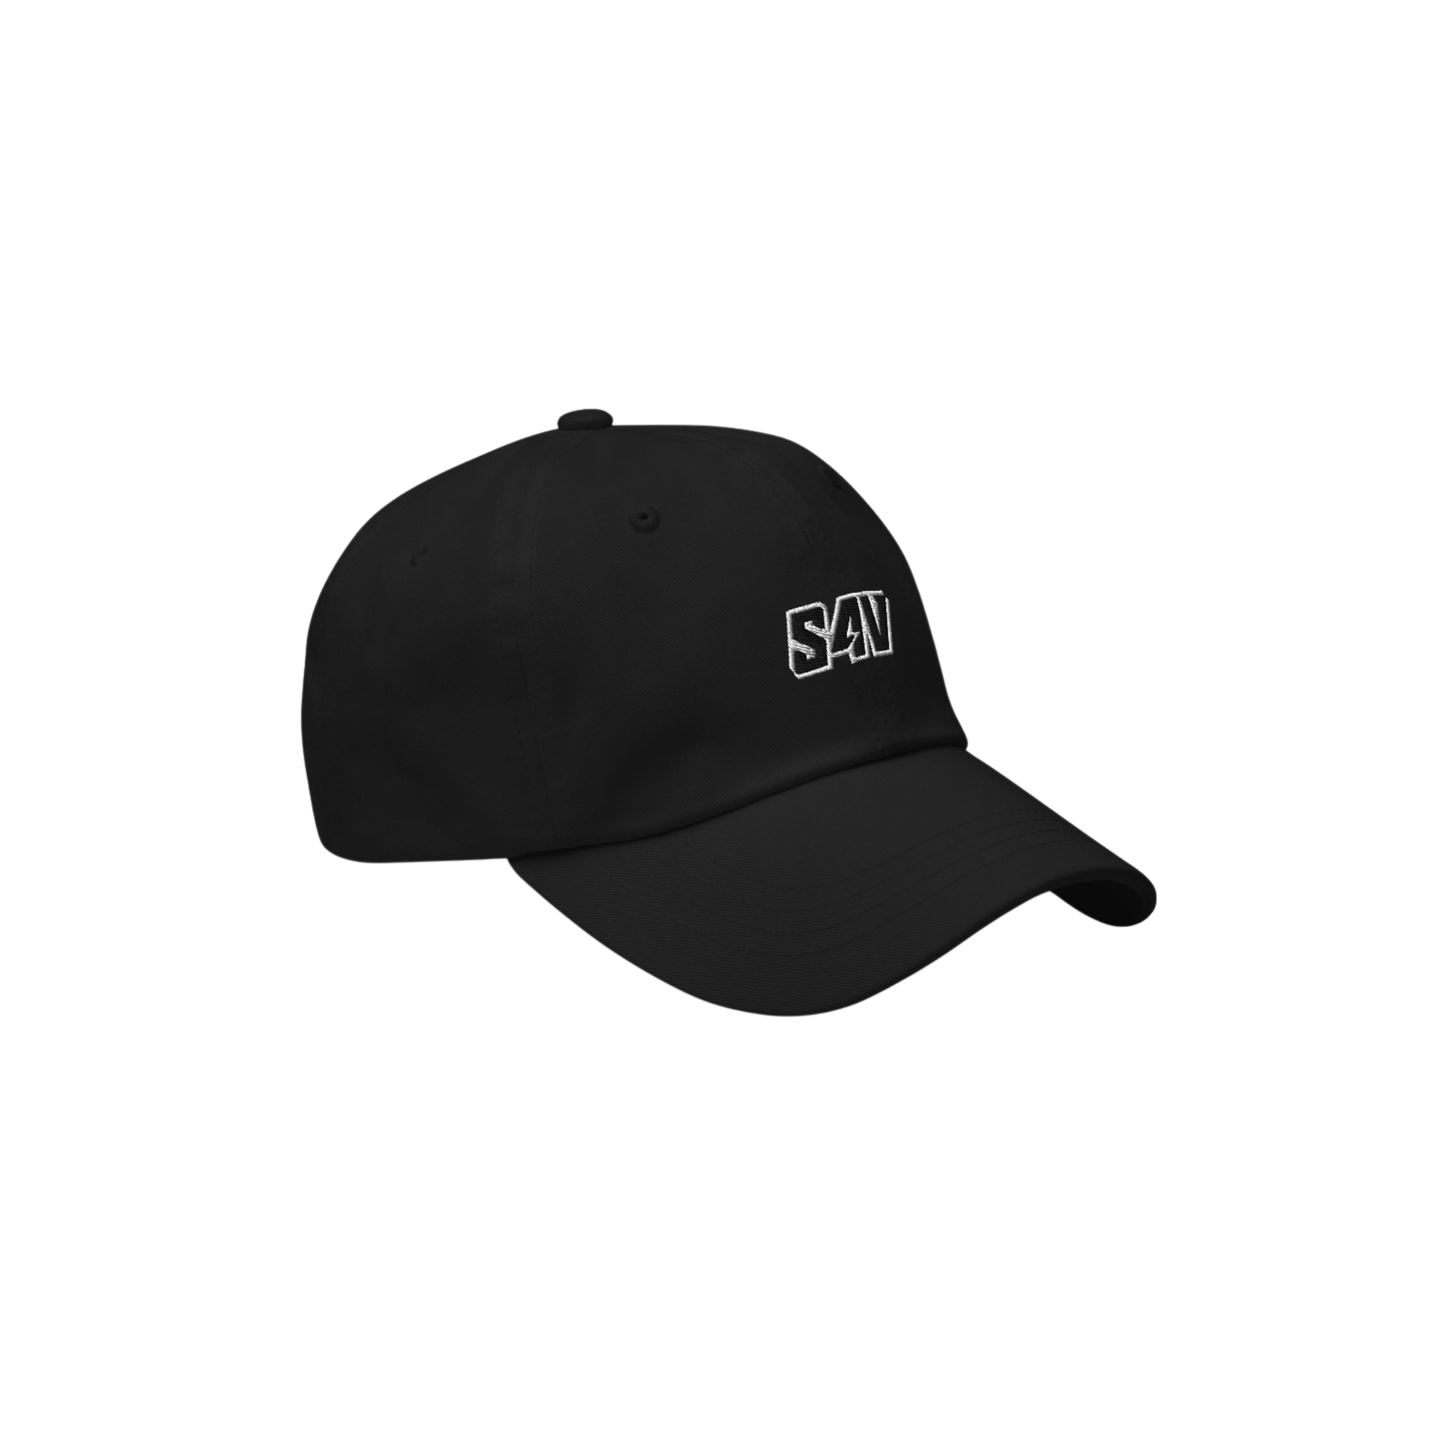 S4V OG DAD CAP BLACK